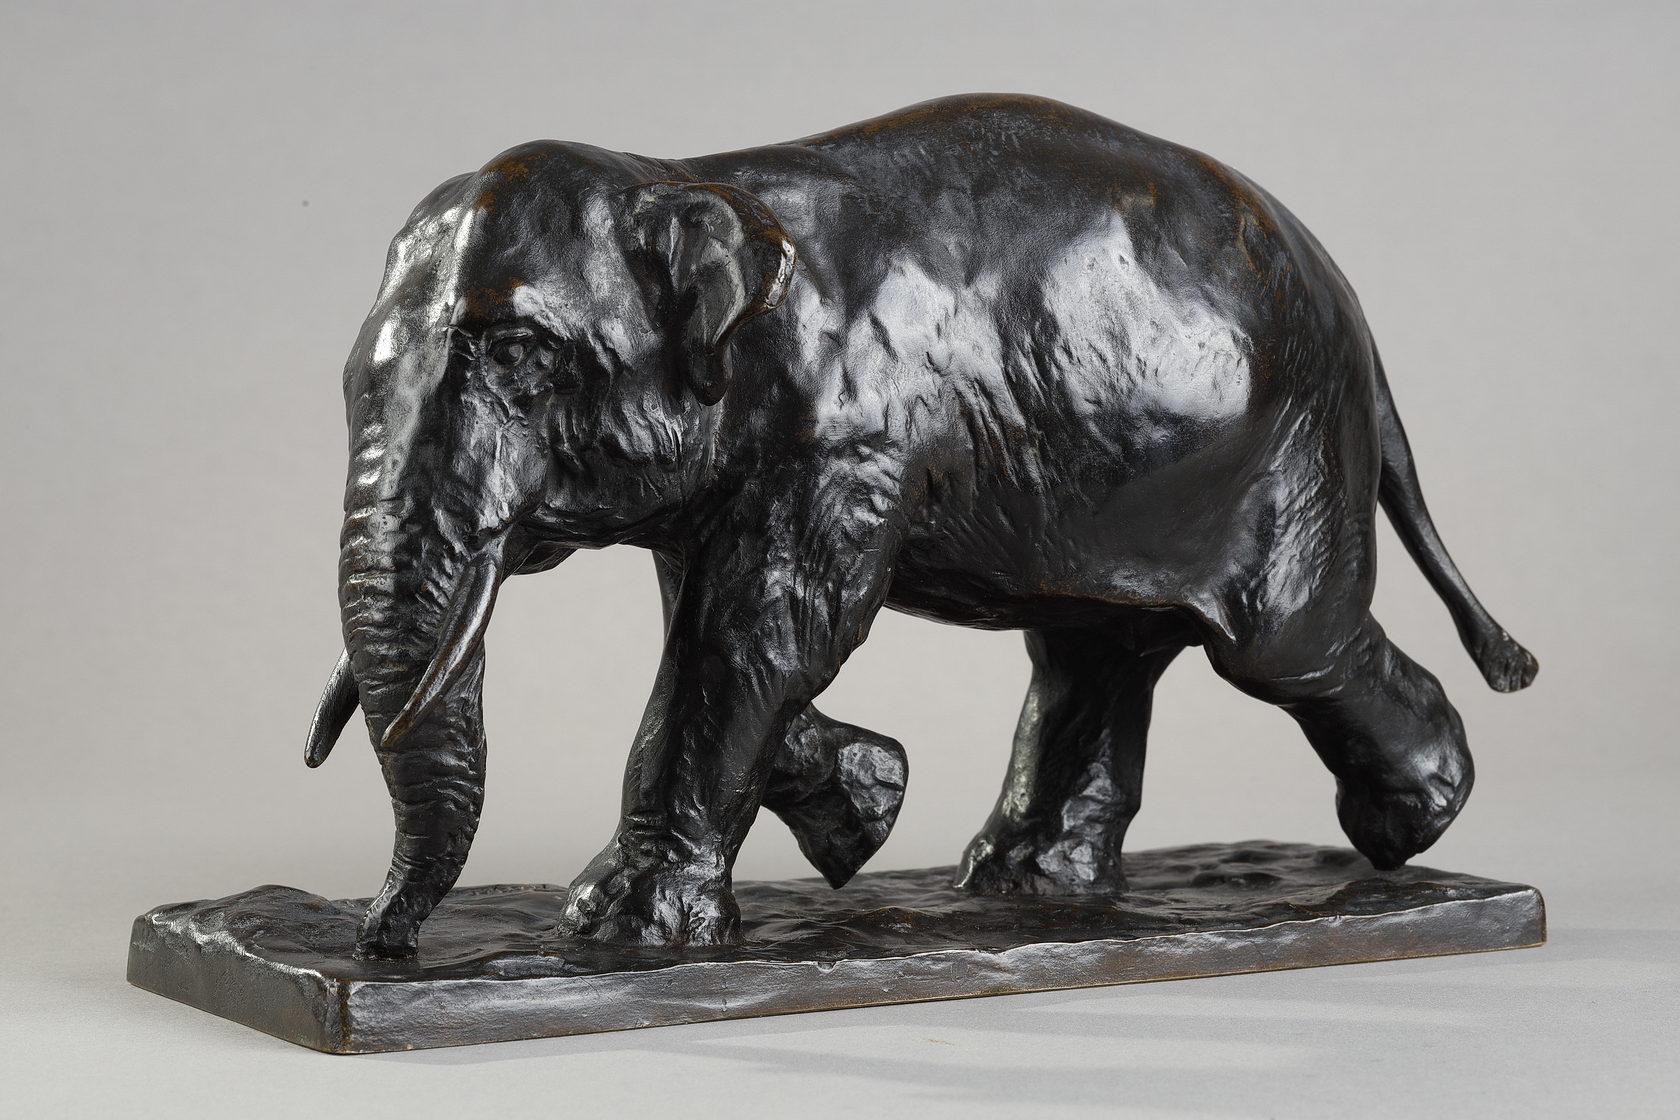 Le trot de l'éléphant - Or Figurative Sculpture par Roger Godchaux